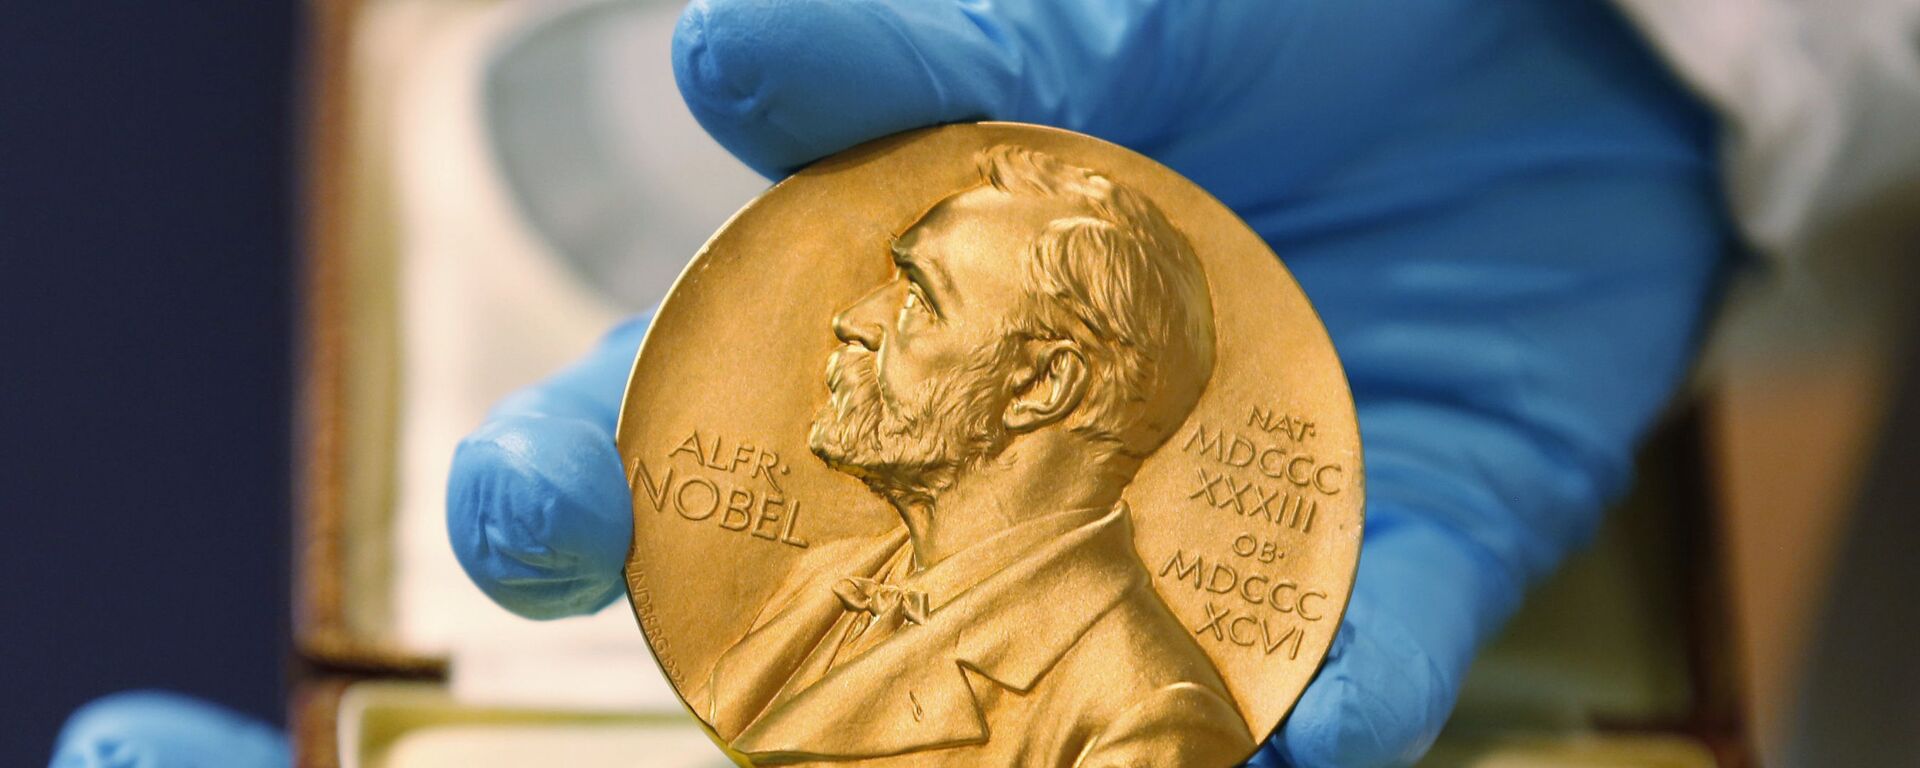 Золотая медаль Нобелевской премии, архивное фото - Sputnik Lietuva, 1920, 05.10.2021